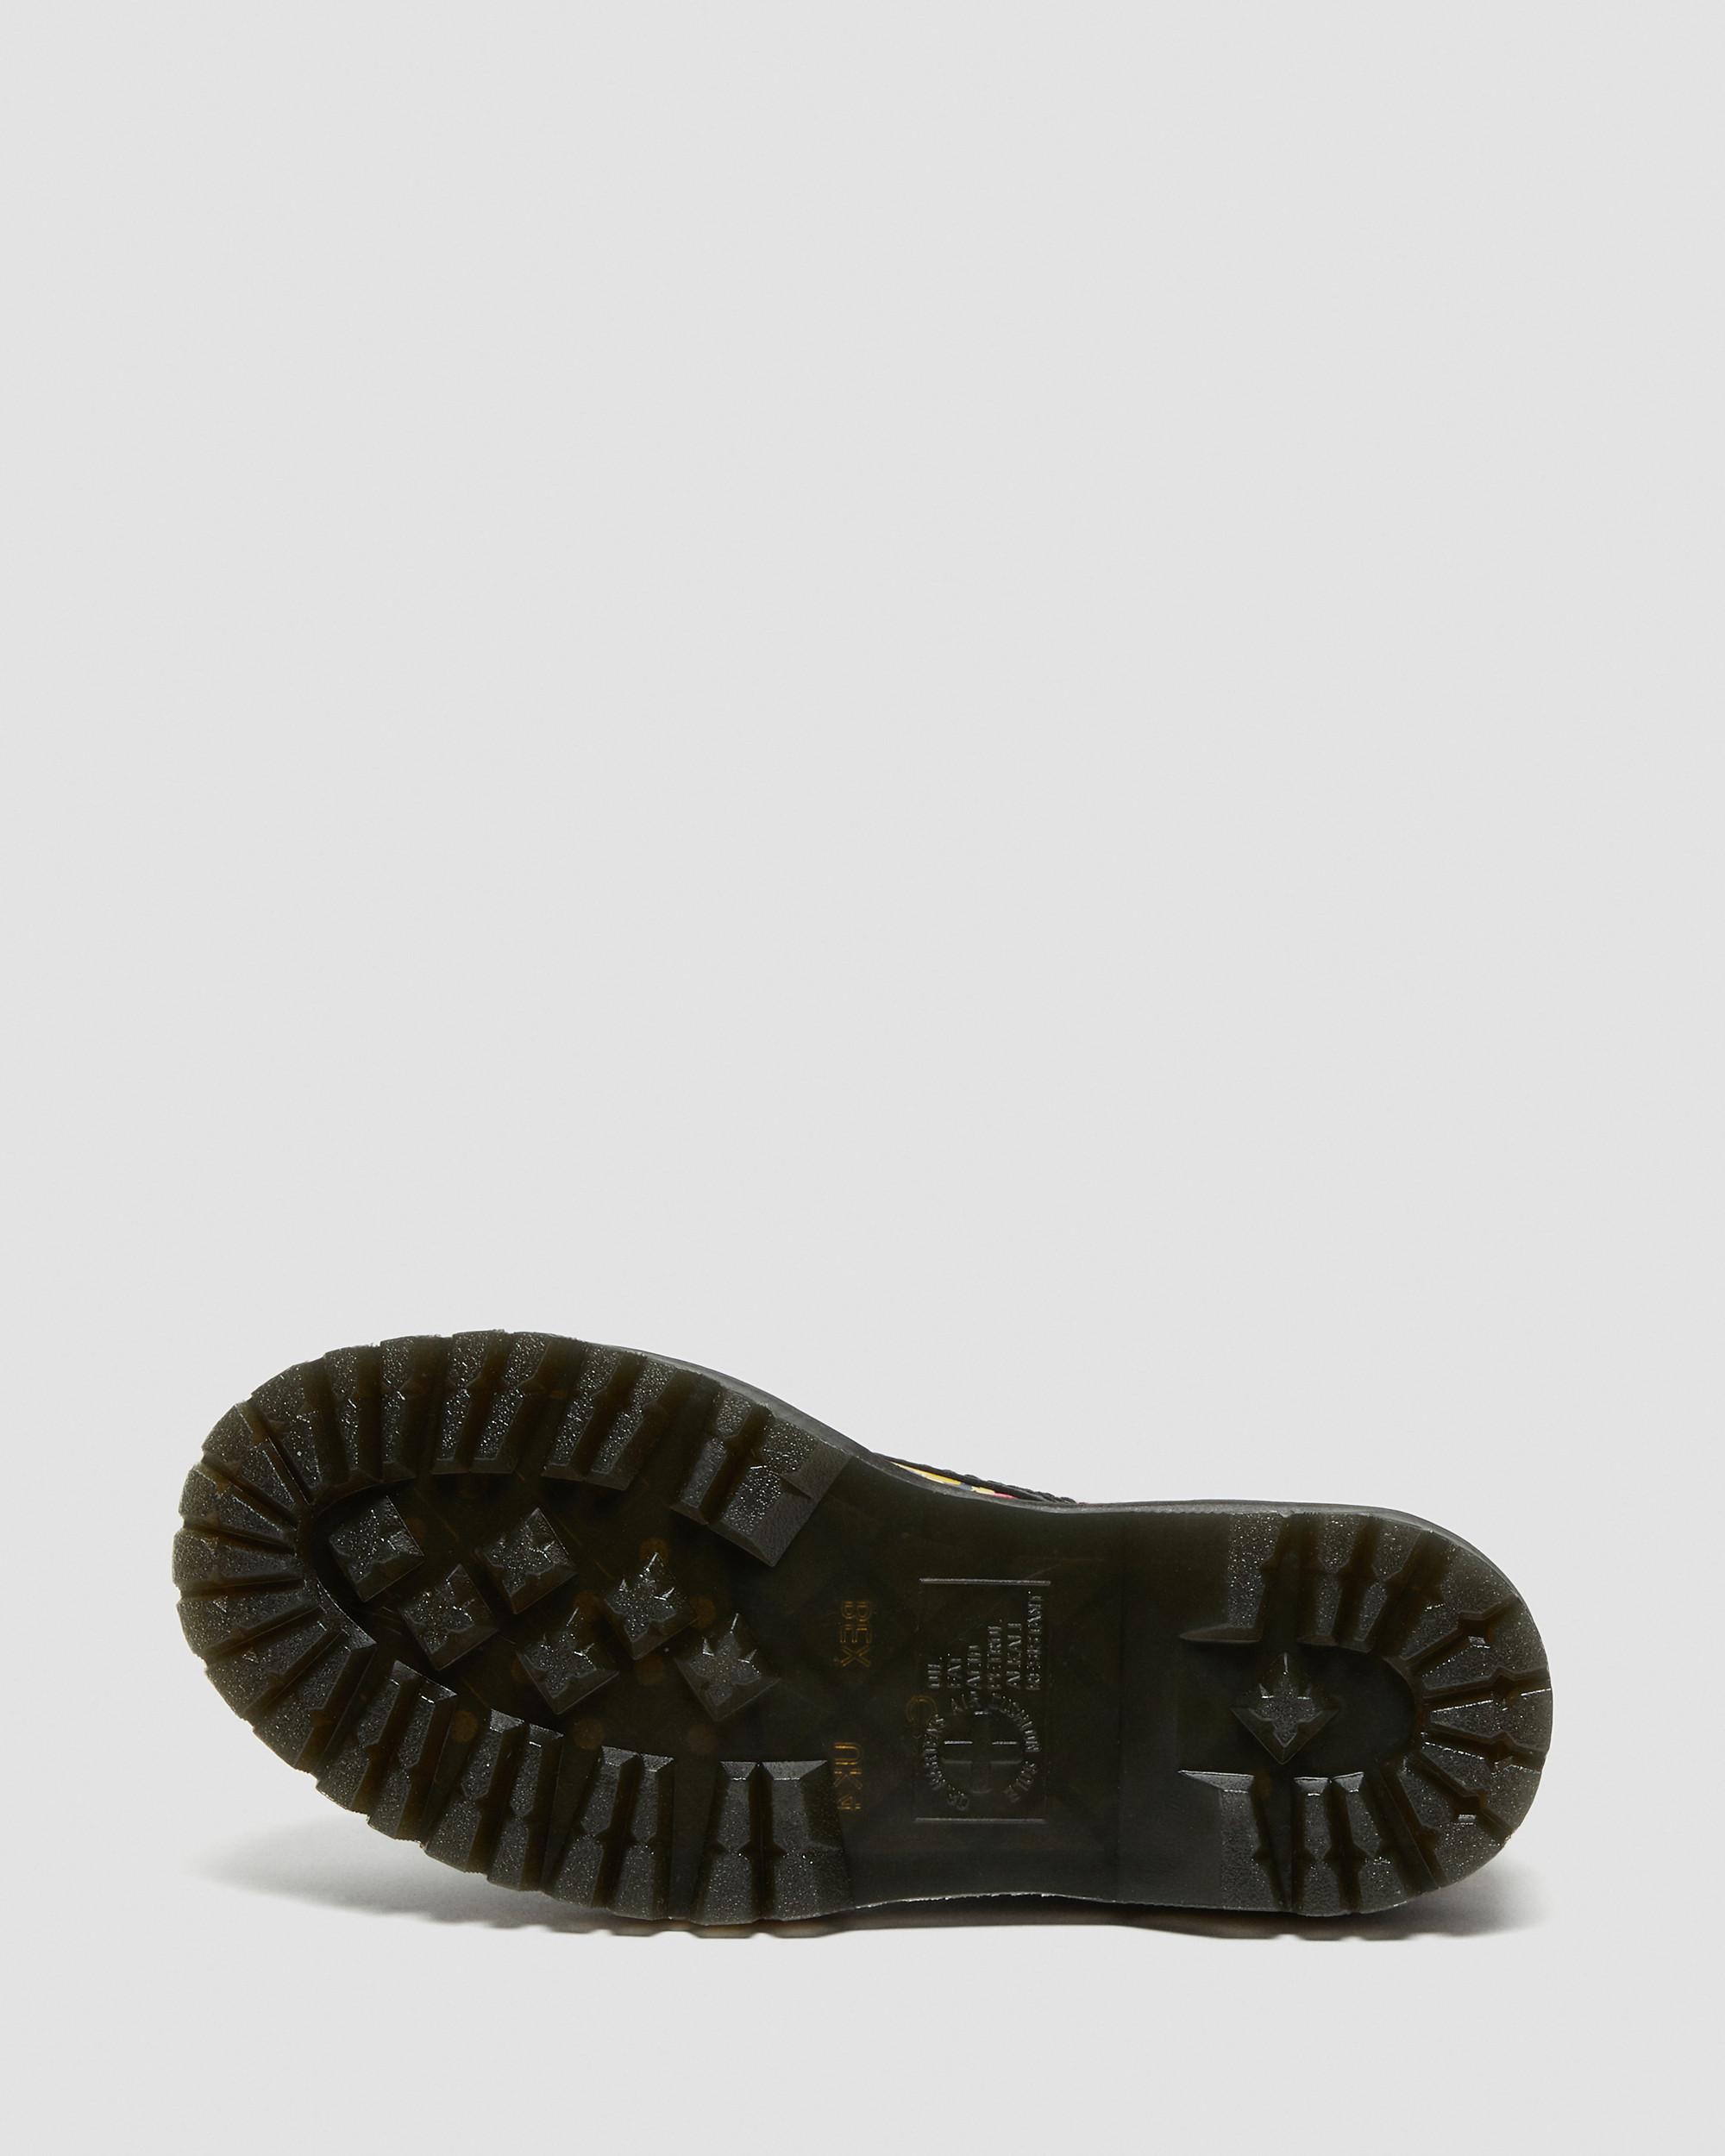 | Floral Martens in Sinclair Up Mash Boots Platform Leather Black Dr.